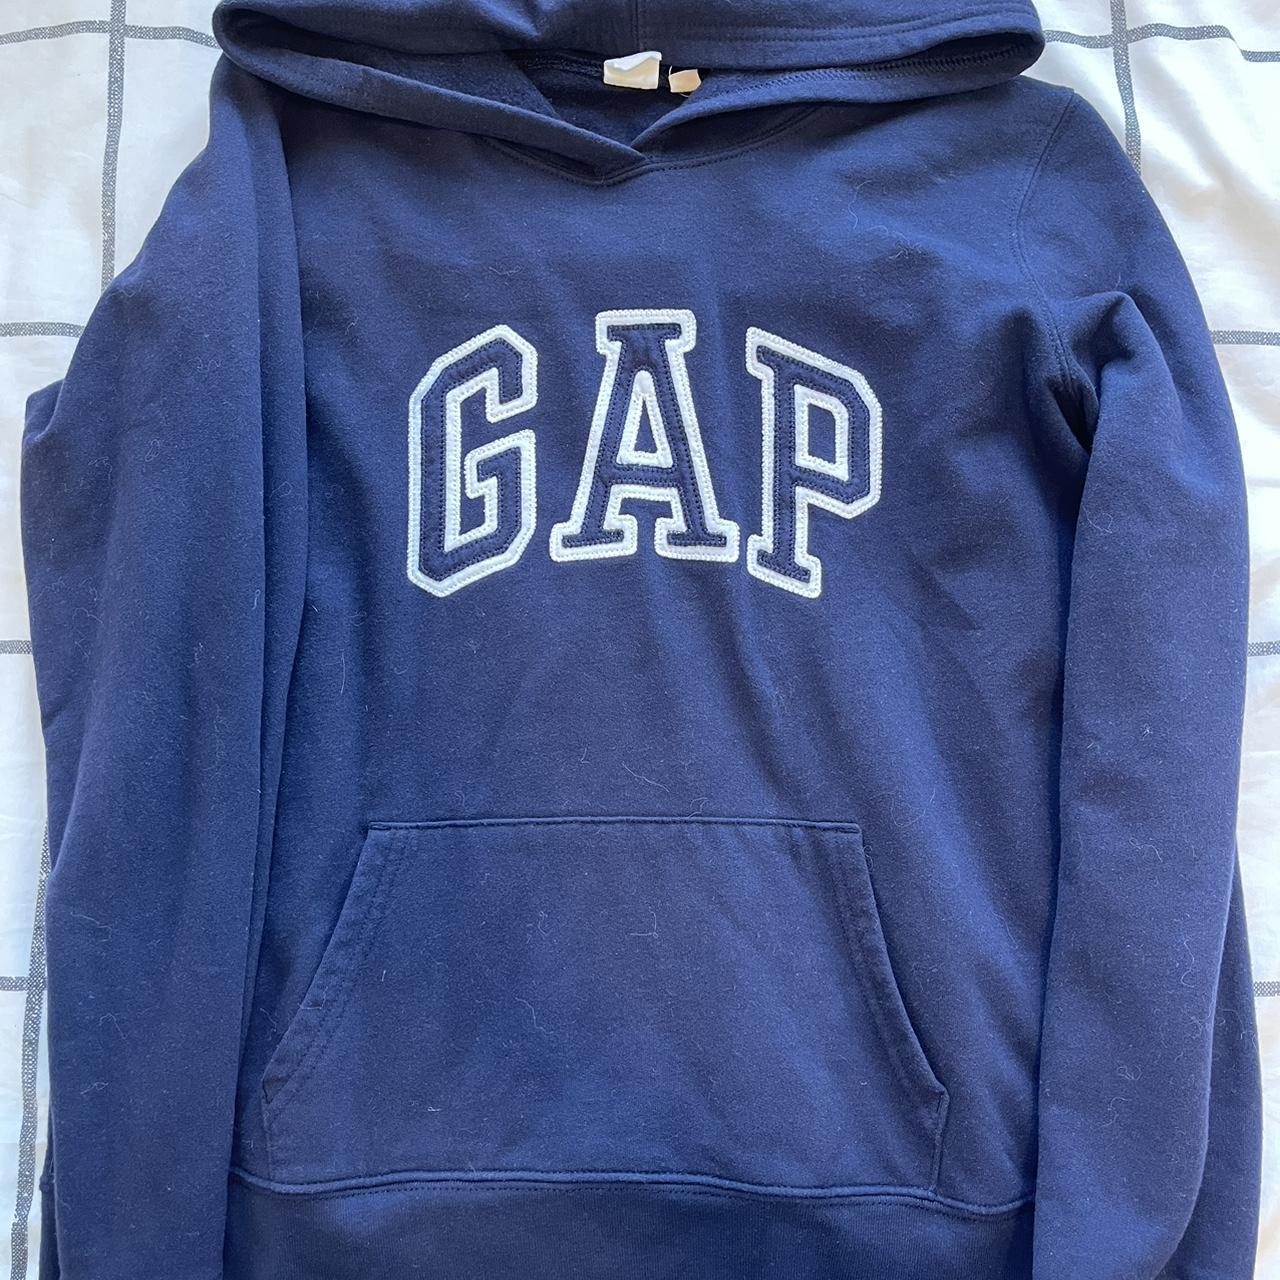 Gap Hoodie - Dark Blue Size Medium Great condition... - Depop